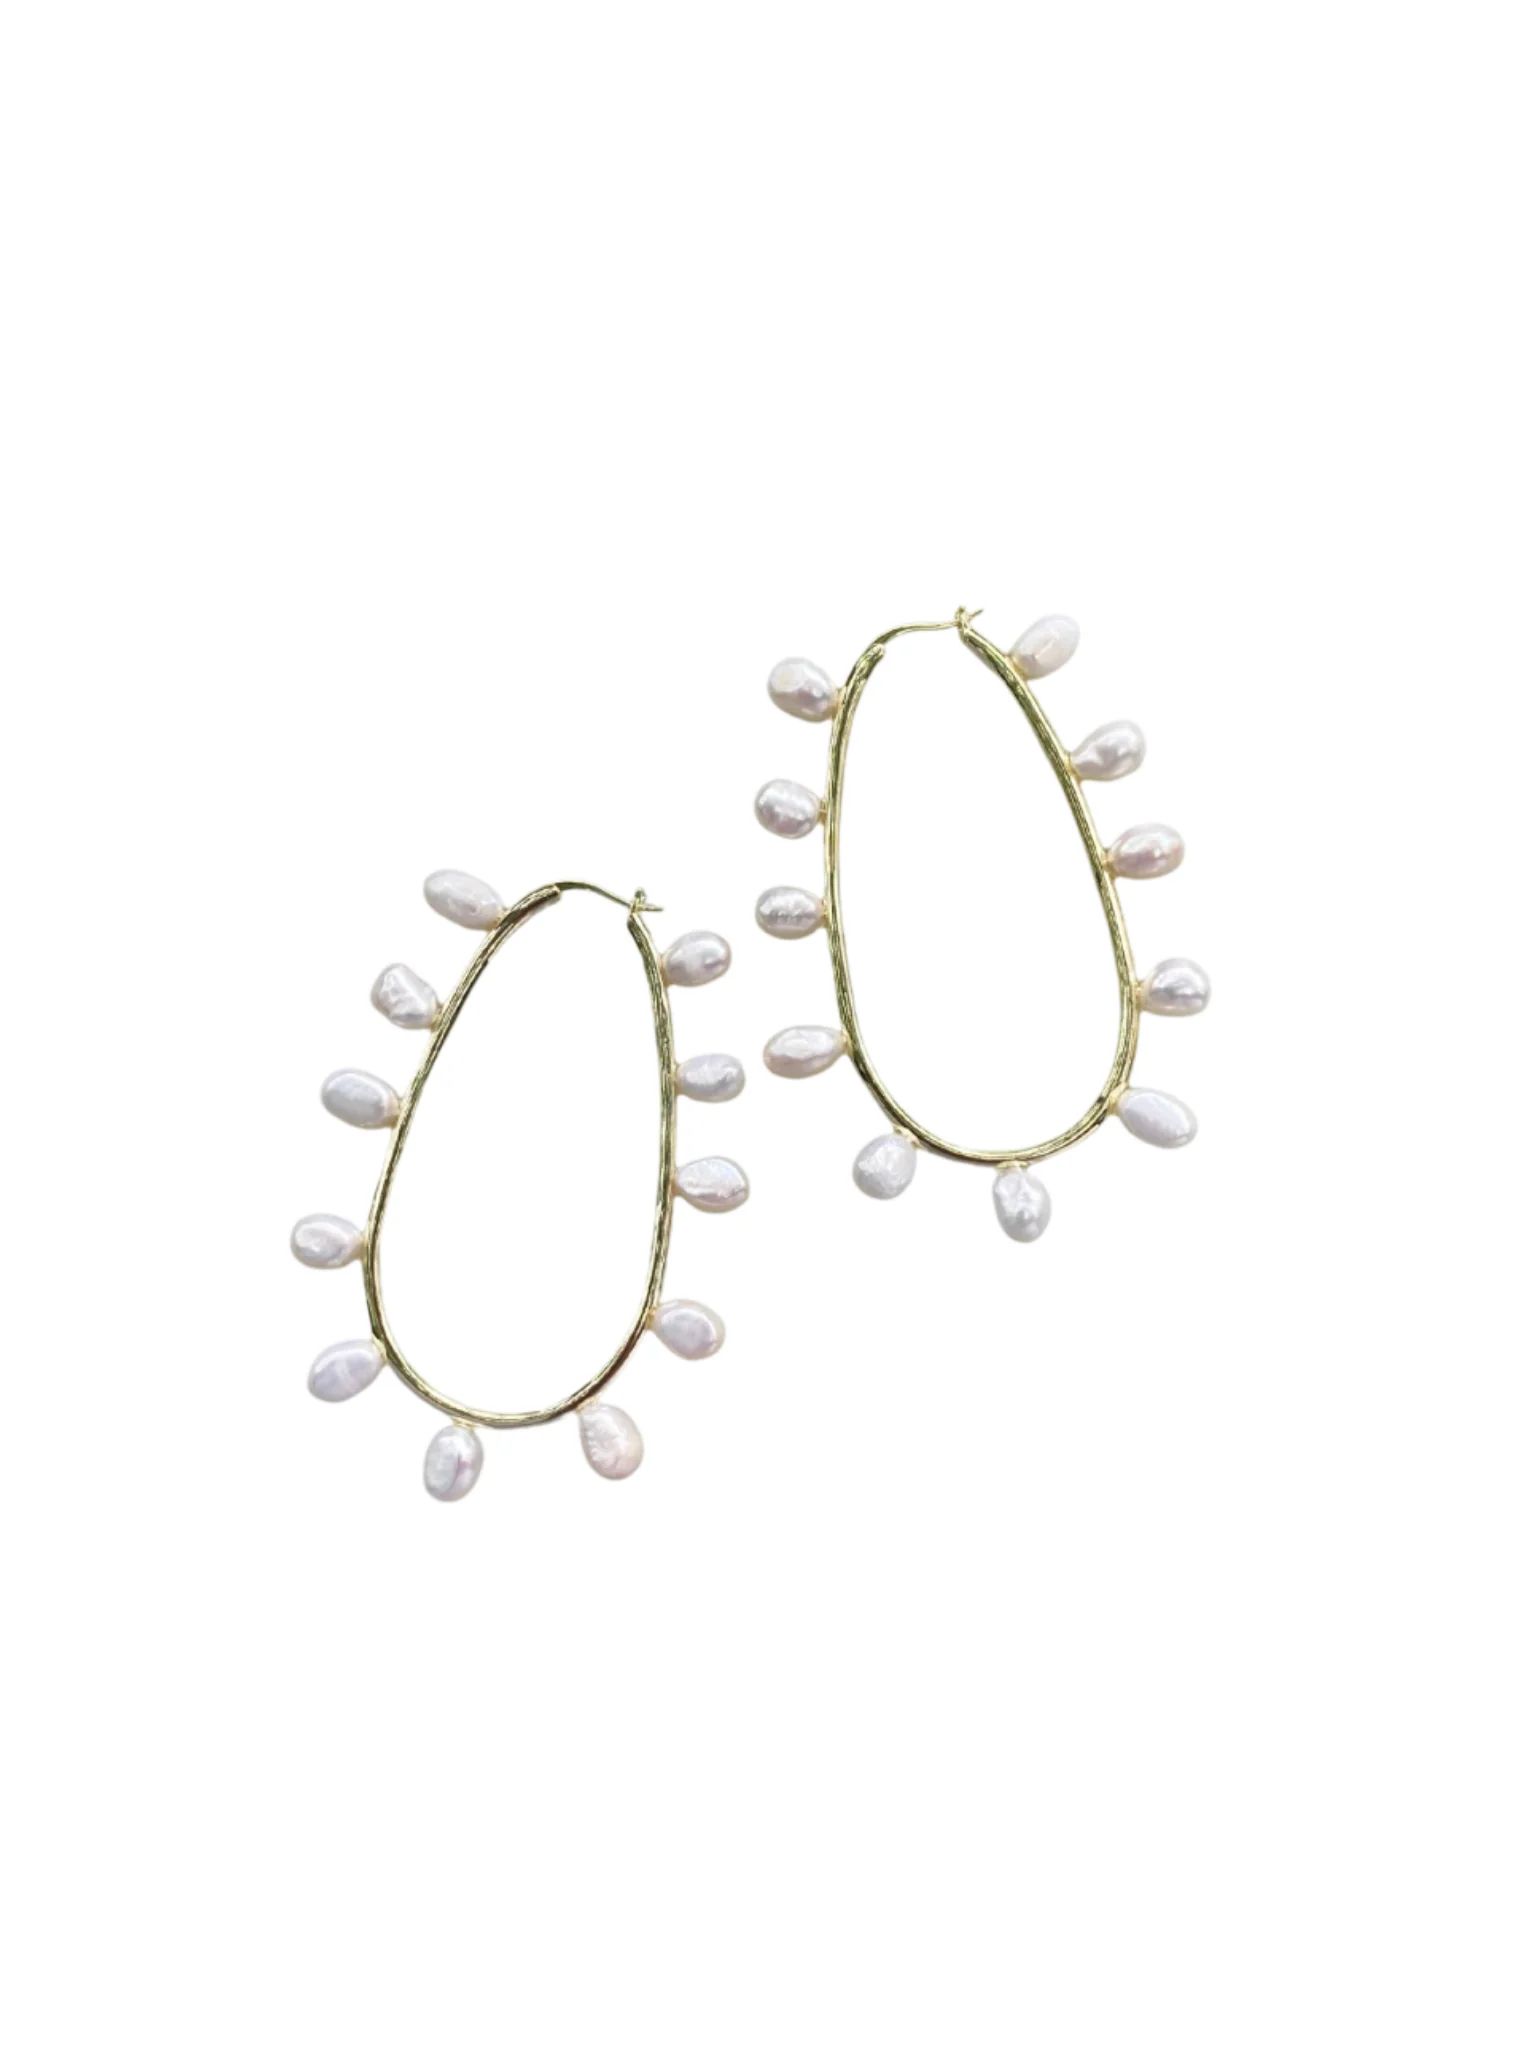 freshwater pearl loops | Nicola Bathie Jewelry